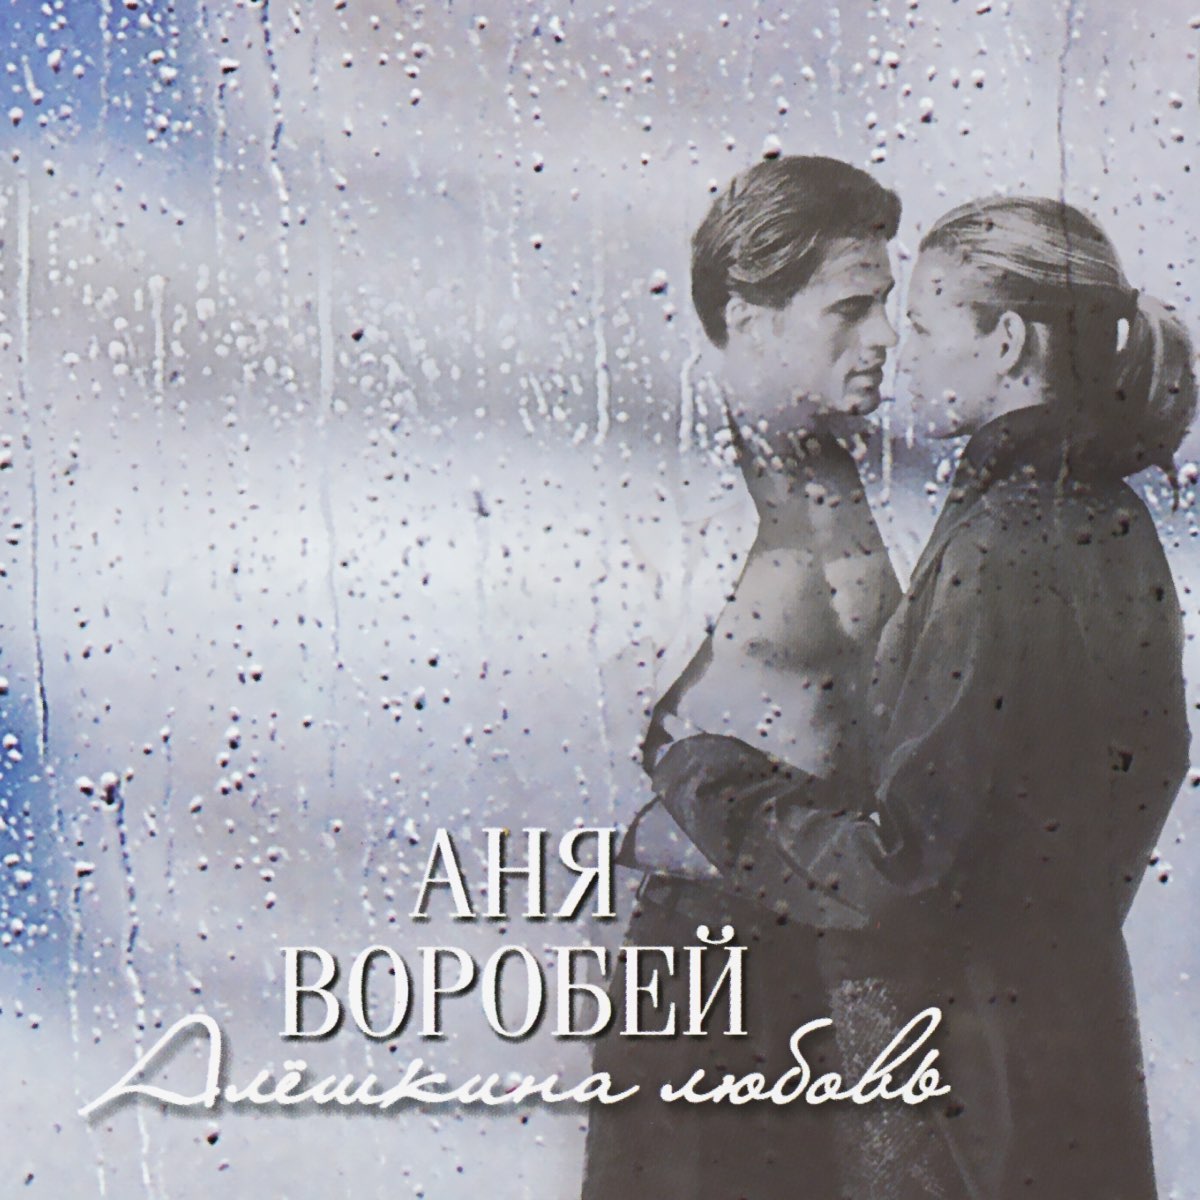 Альбом "Алёшкина любовь" (Аня Воробей) .